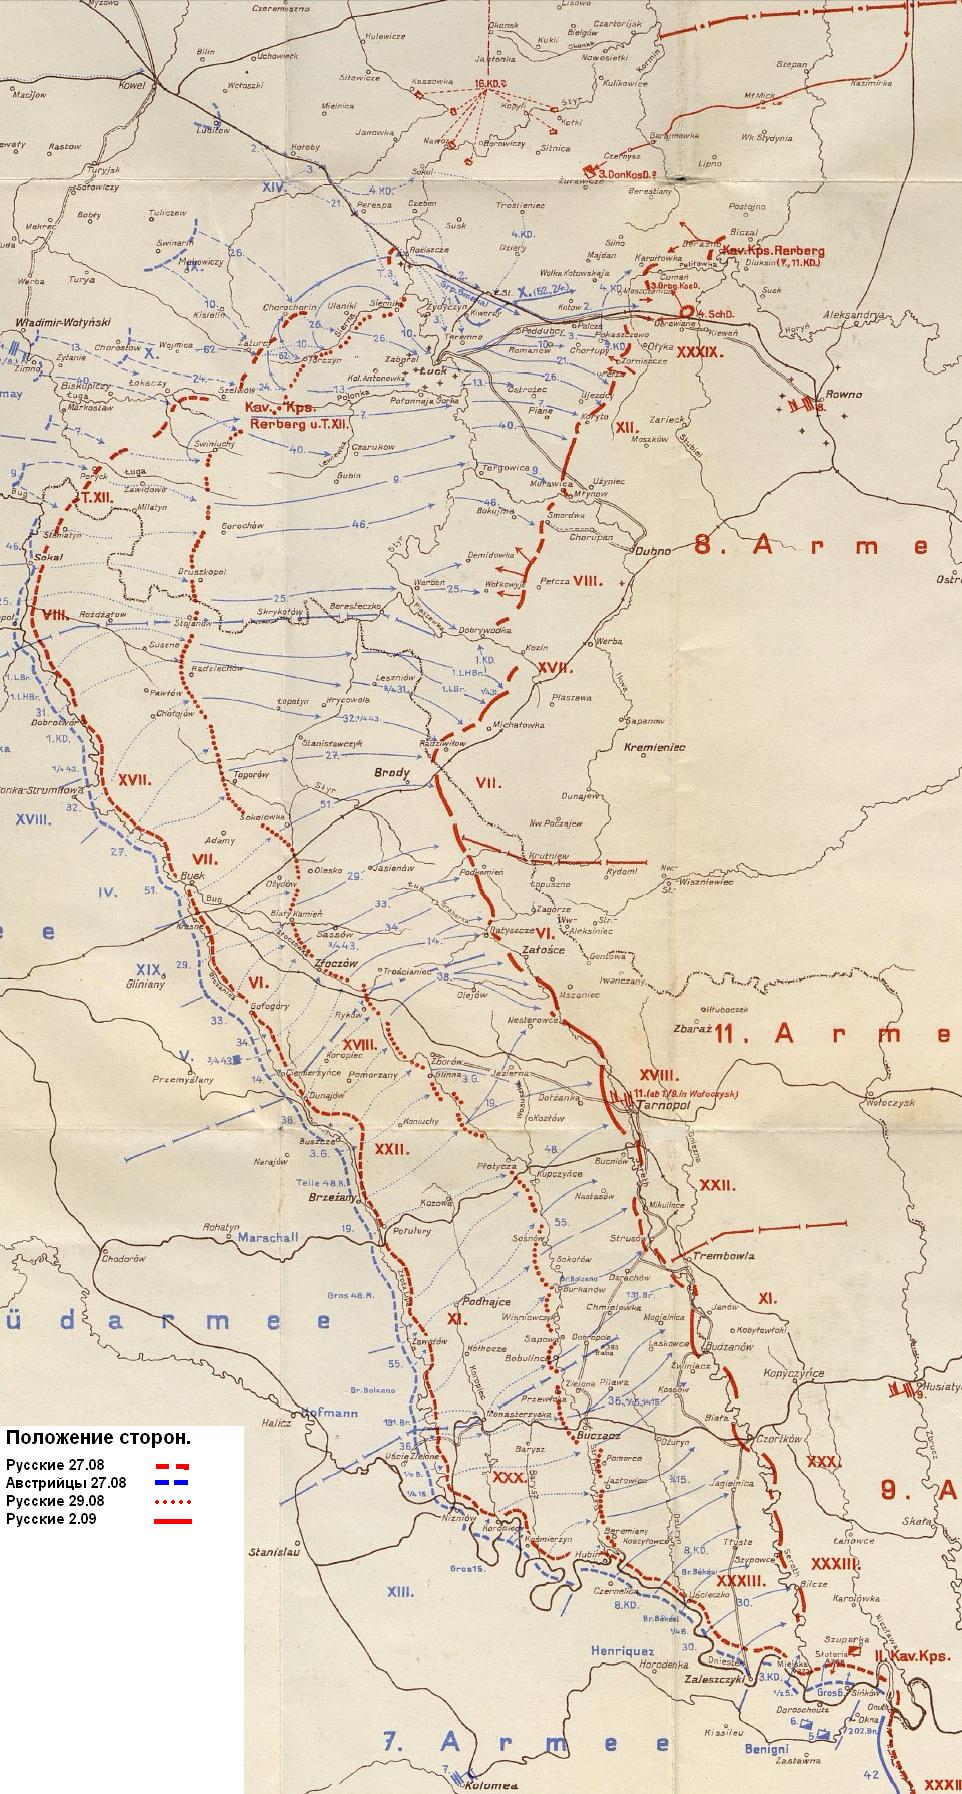 Схема первого этапа Луцко-Ровенской операции 27.08 - 2.09.1915 года.